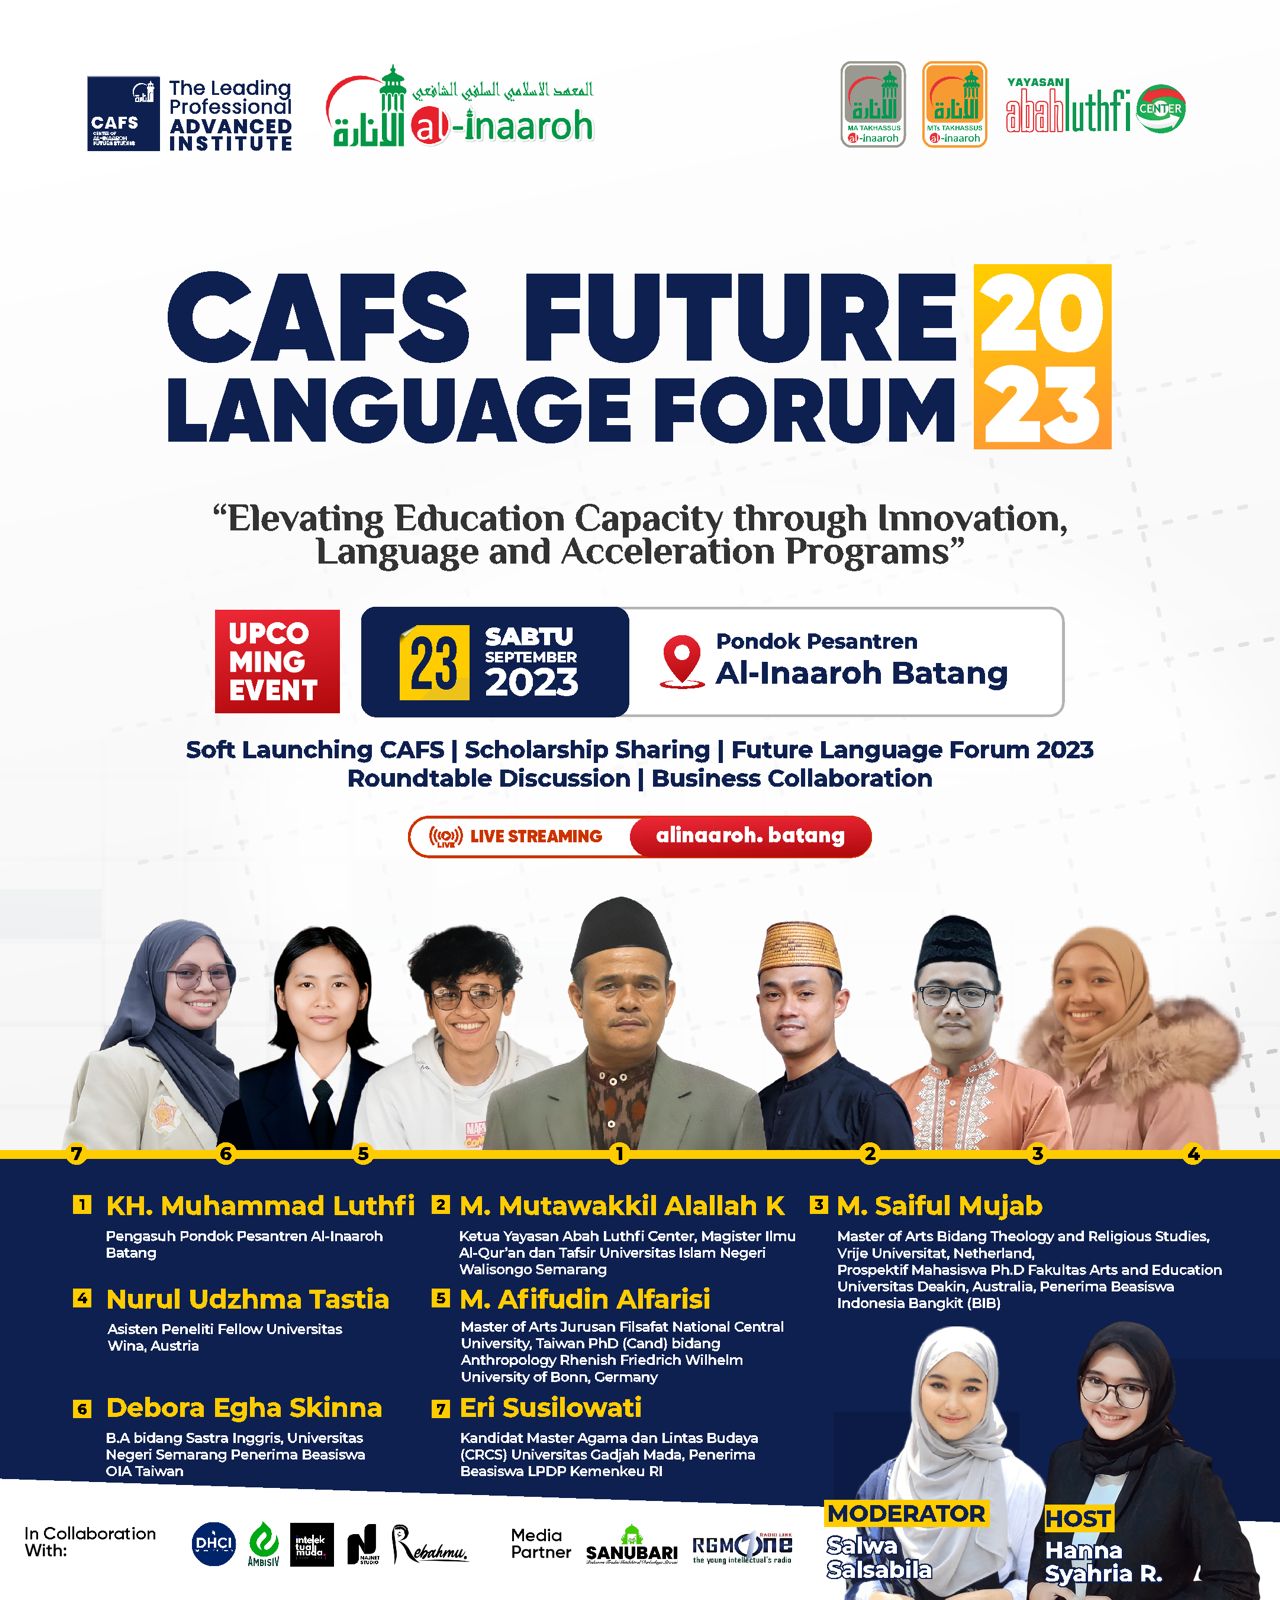 CAFS Future Language Forum 2023: Bentuk Kolaborasi Sinergis Melalui Forum Penguatan Bahasa dengan Berbagai Stakeholder dan Organisasi